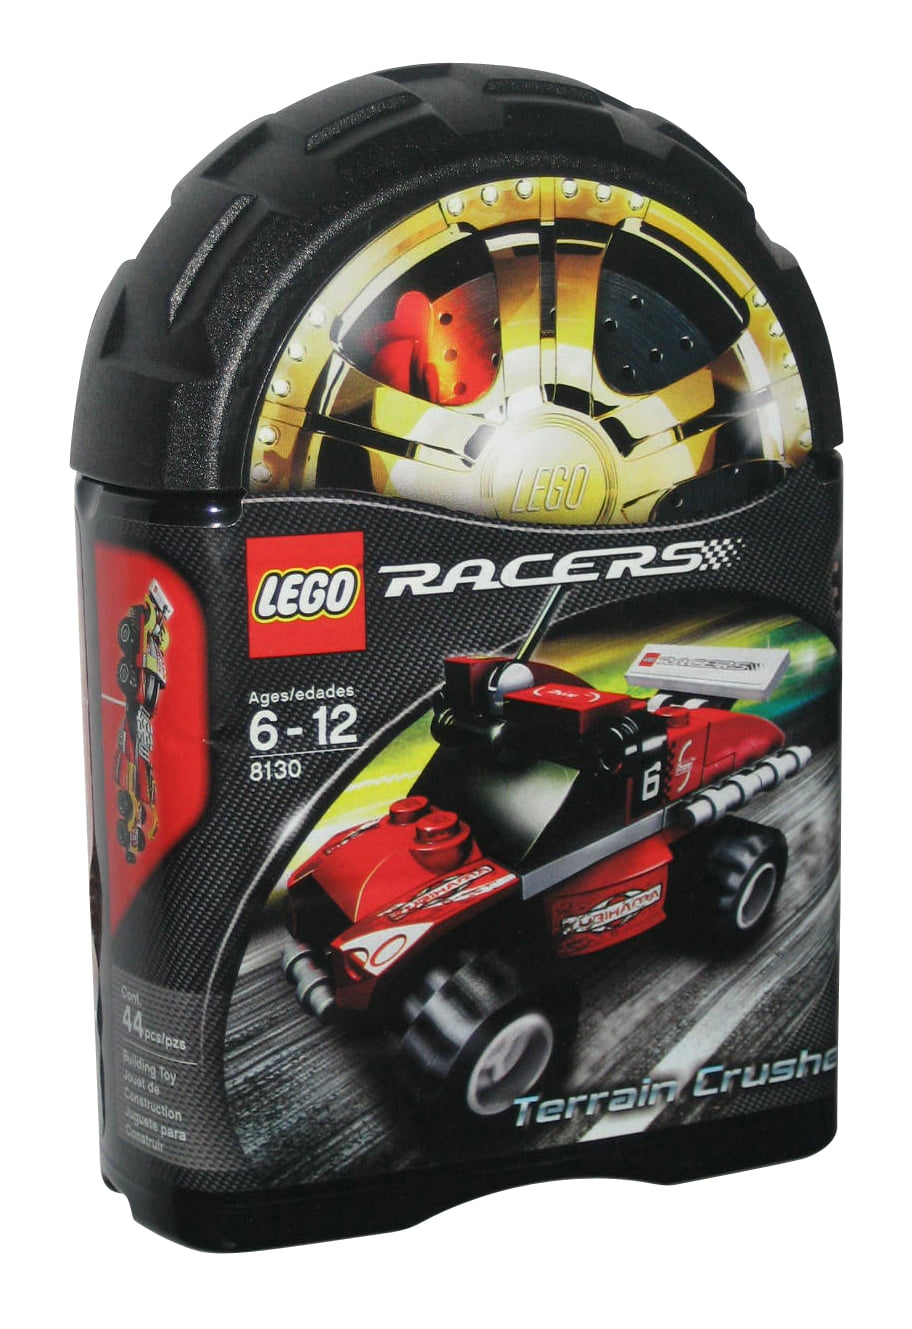 slogan svær at tilfredsstille kom videre LEGO Terrain Crusher (2007) Building Toy Car Set 8130 - Walmart.com